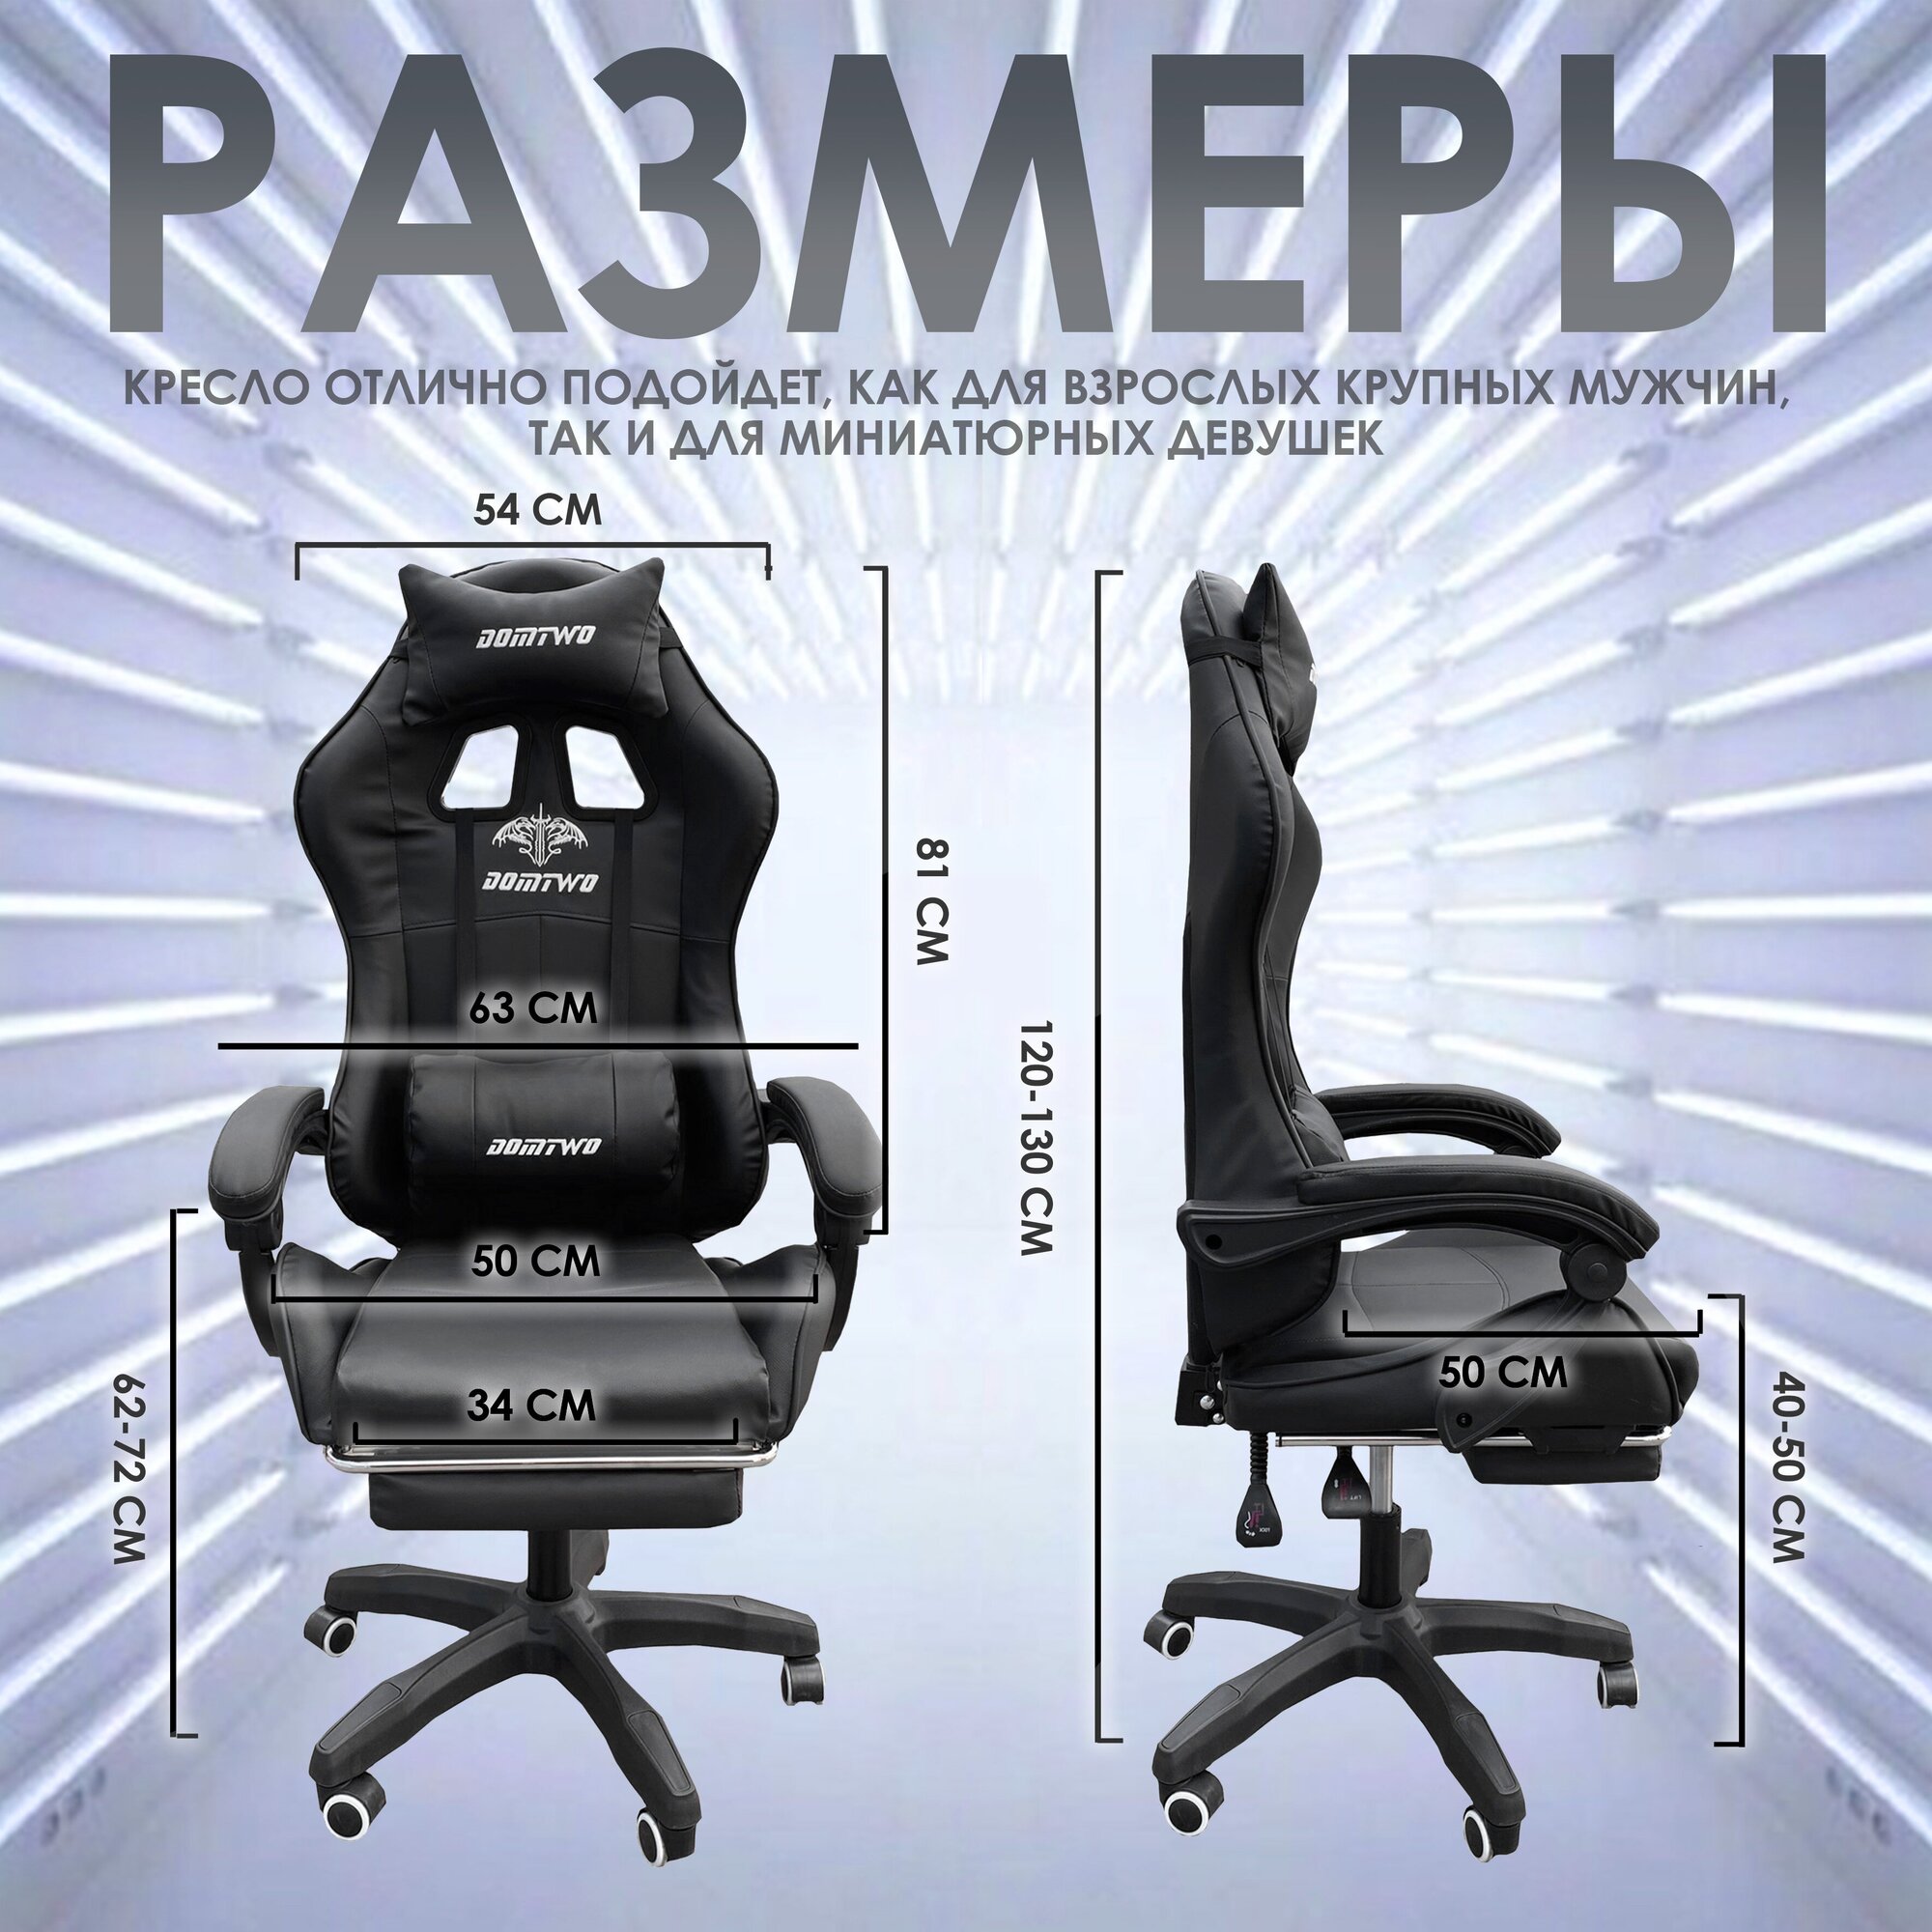 Компьютерное кресло Domtwo 206 игровое, обивка: искусственная кожа, цвет: черный - фотография № 8